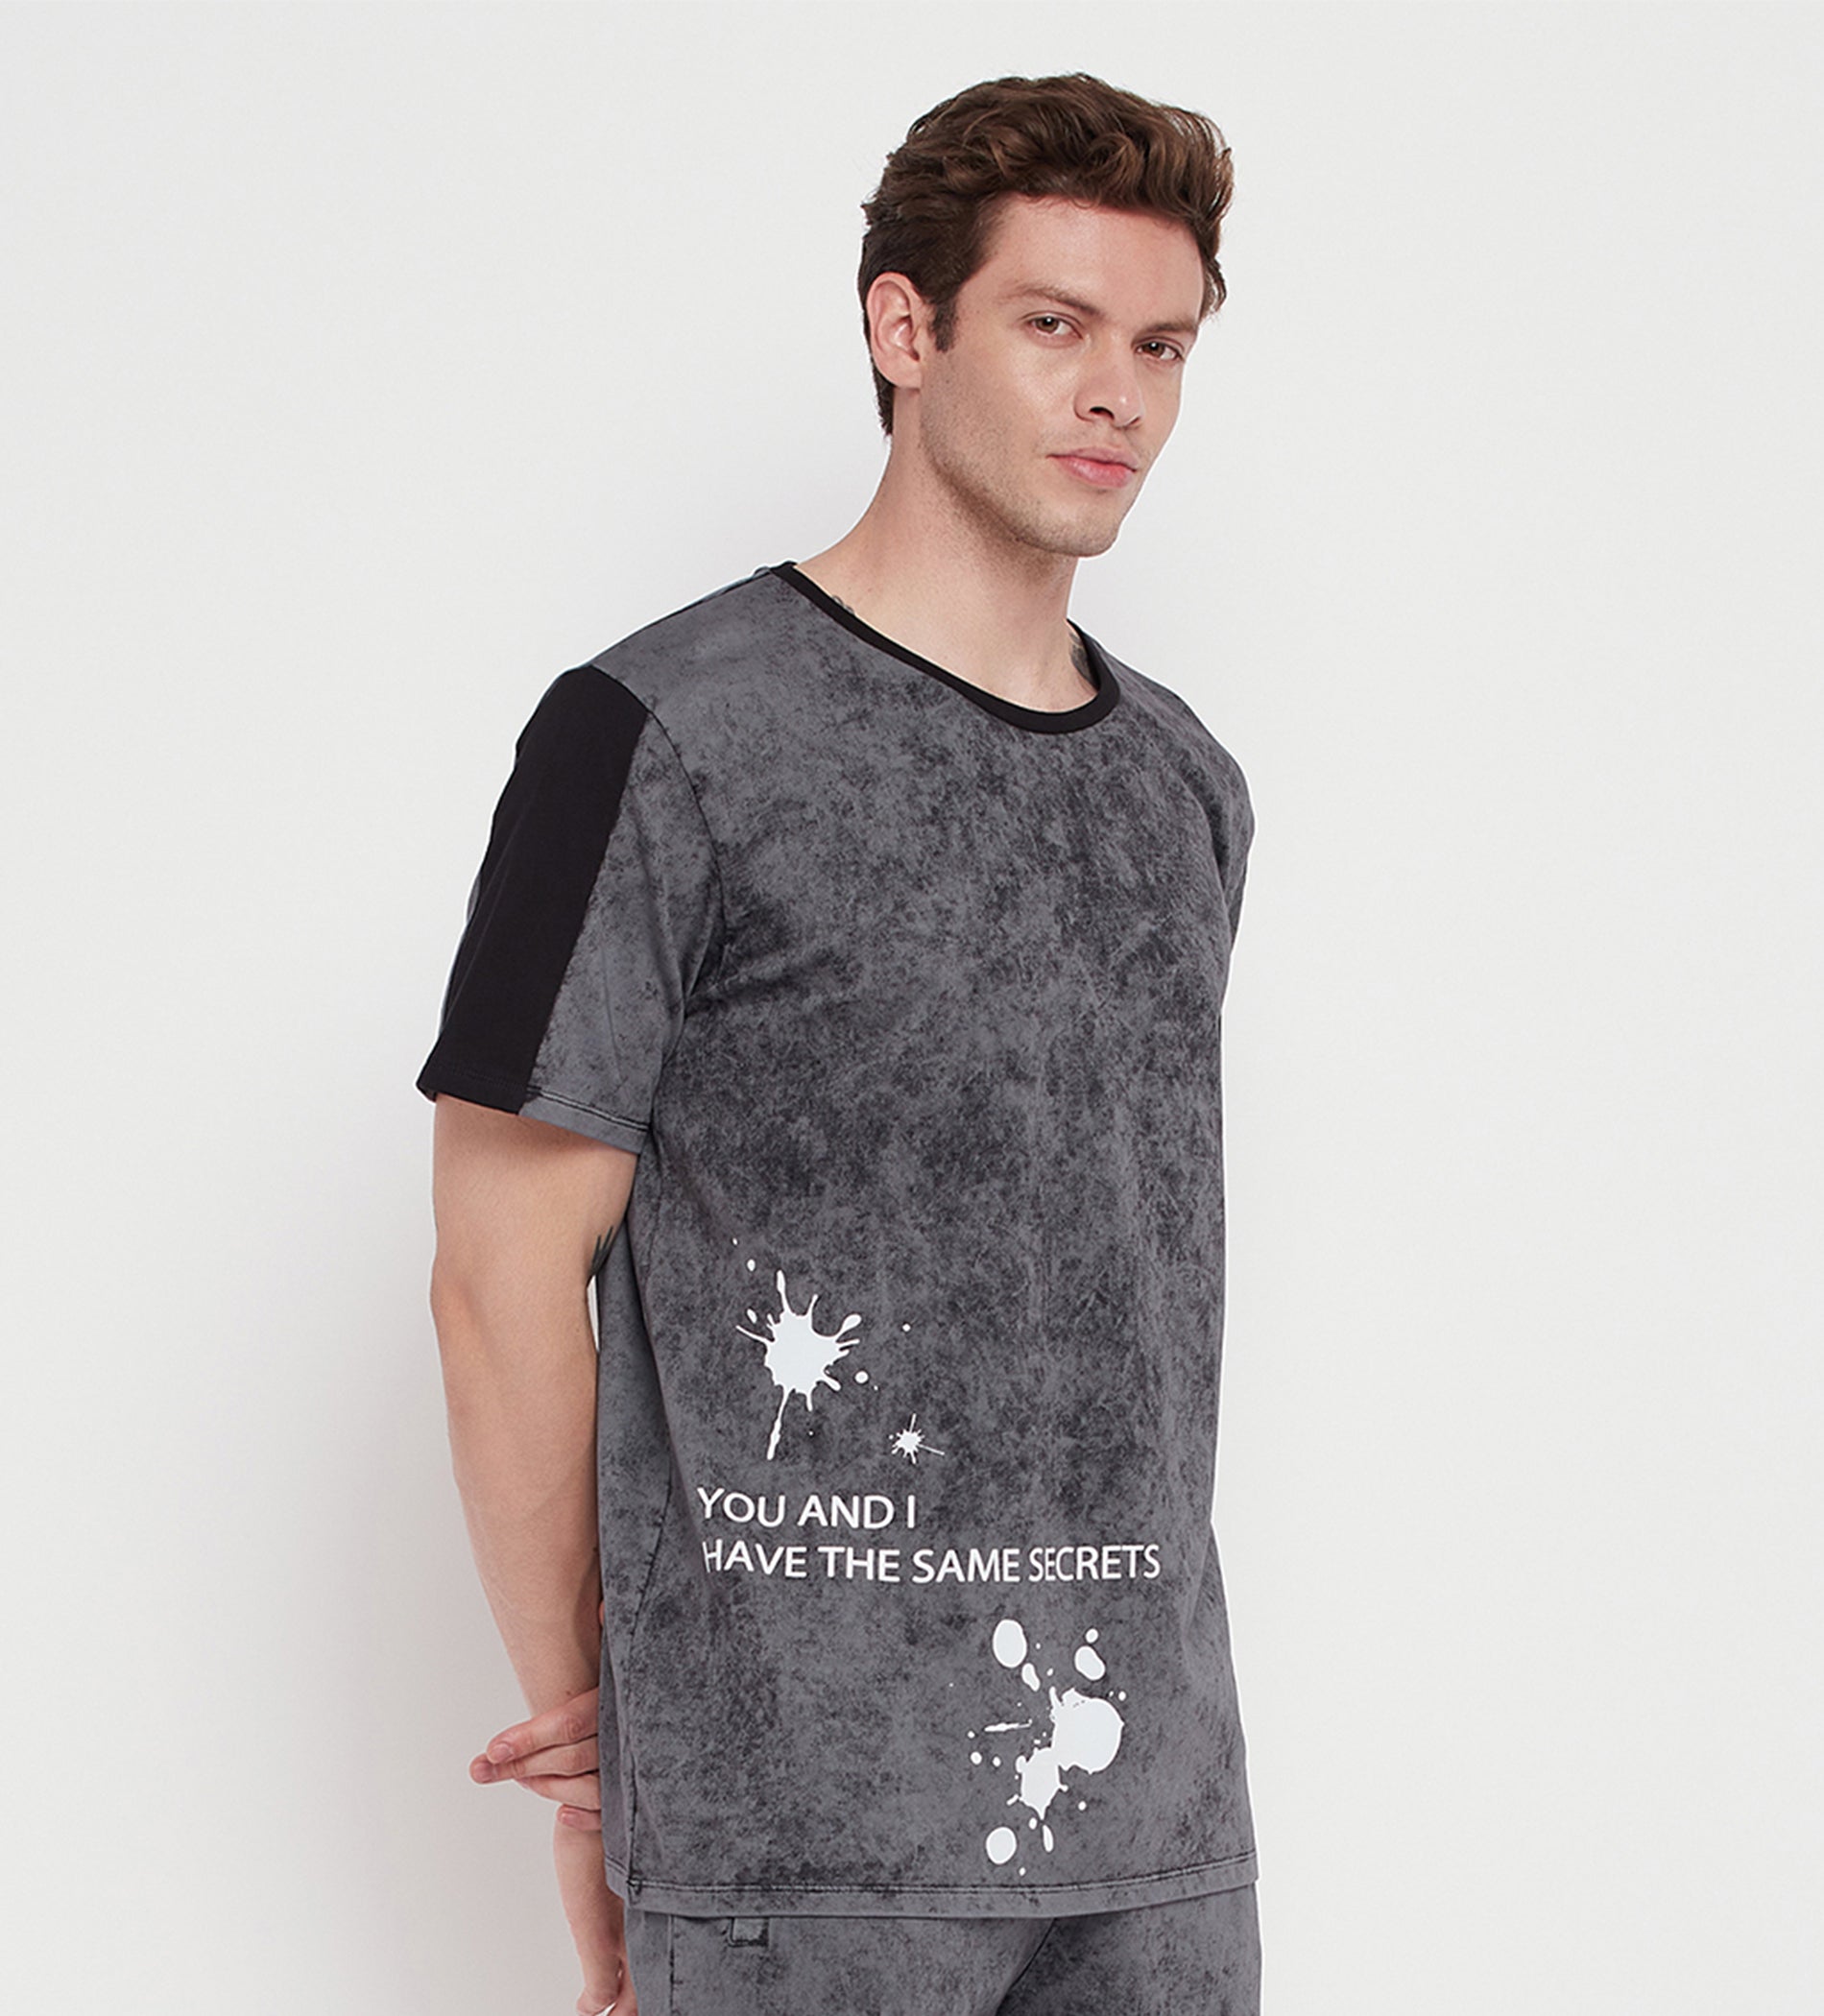 Splash Print Regular Fit T-Shirt for Men - EDRIO